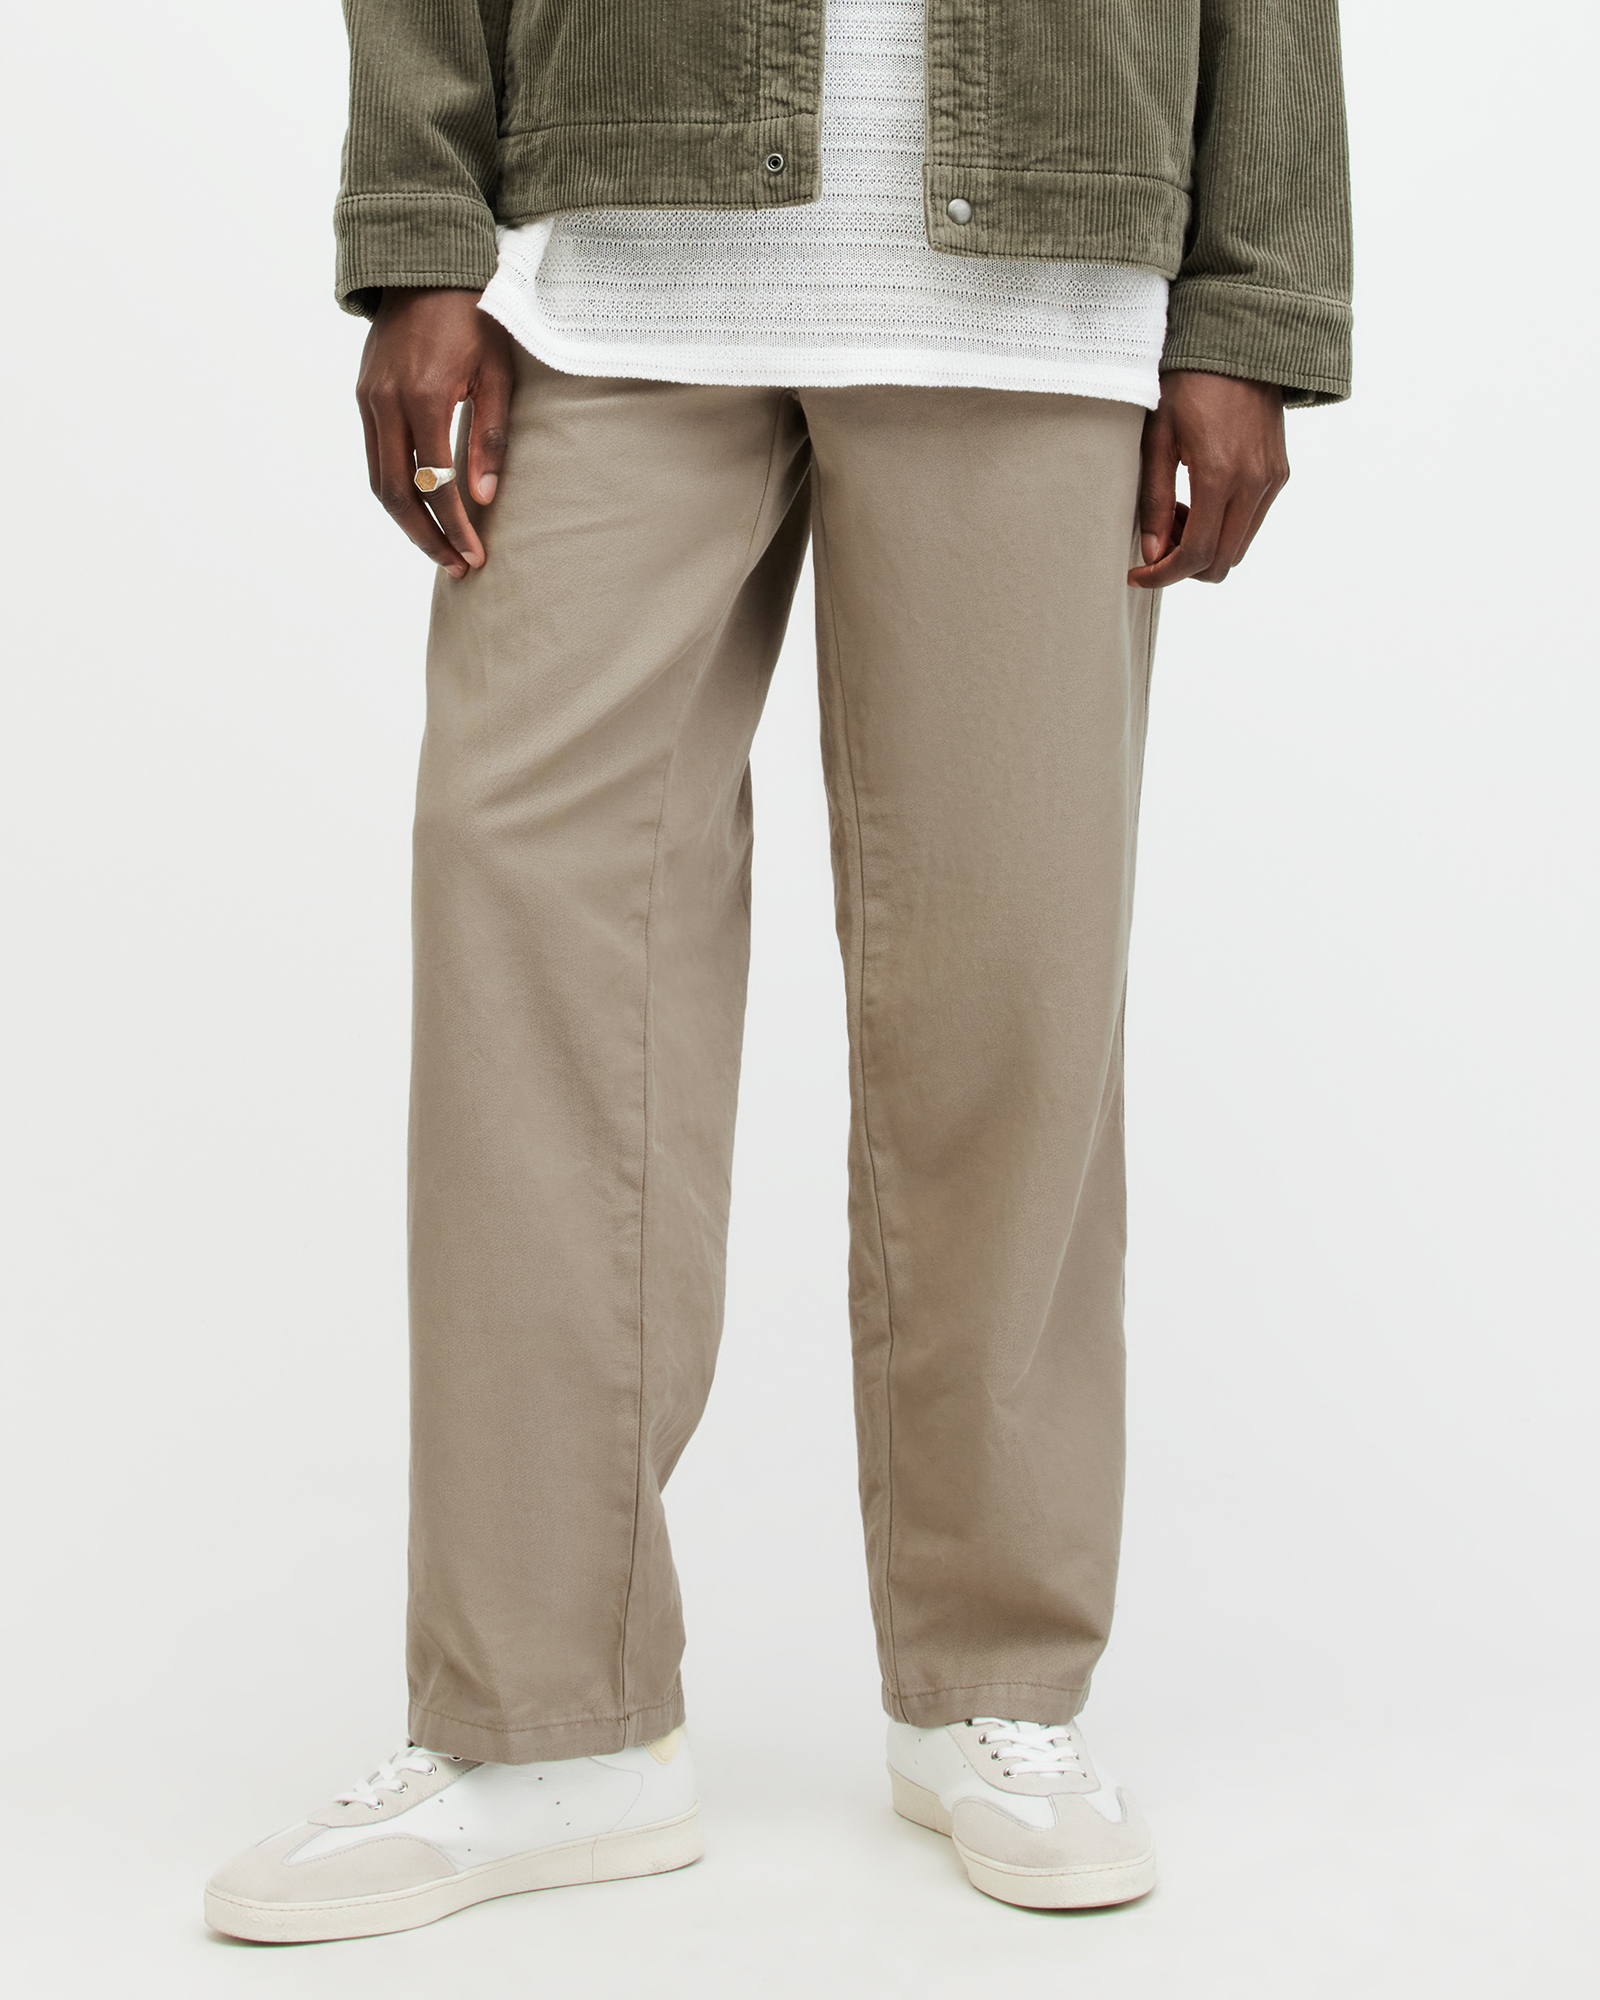 AllSaints Hanbury Fit Trousers,, Size: